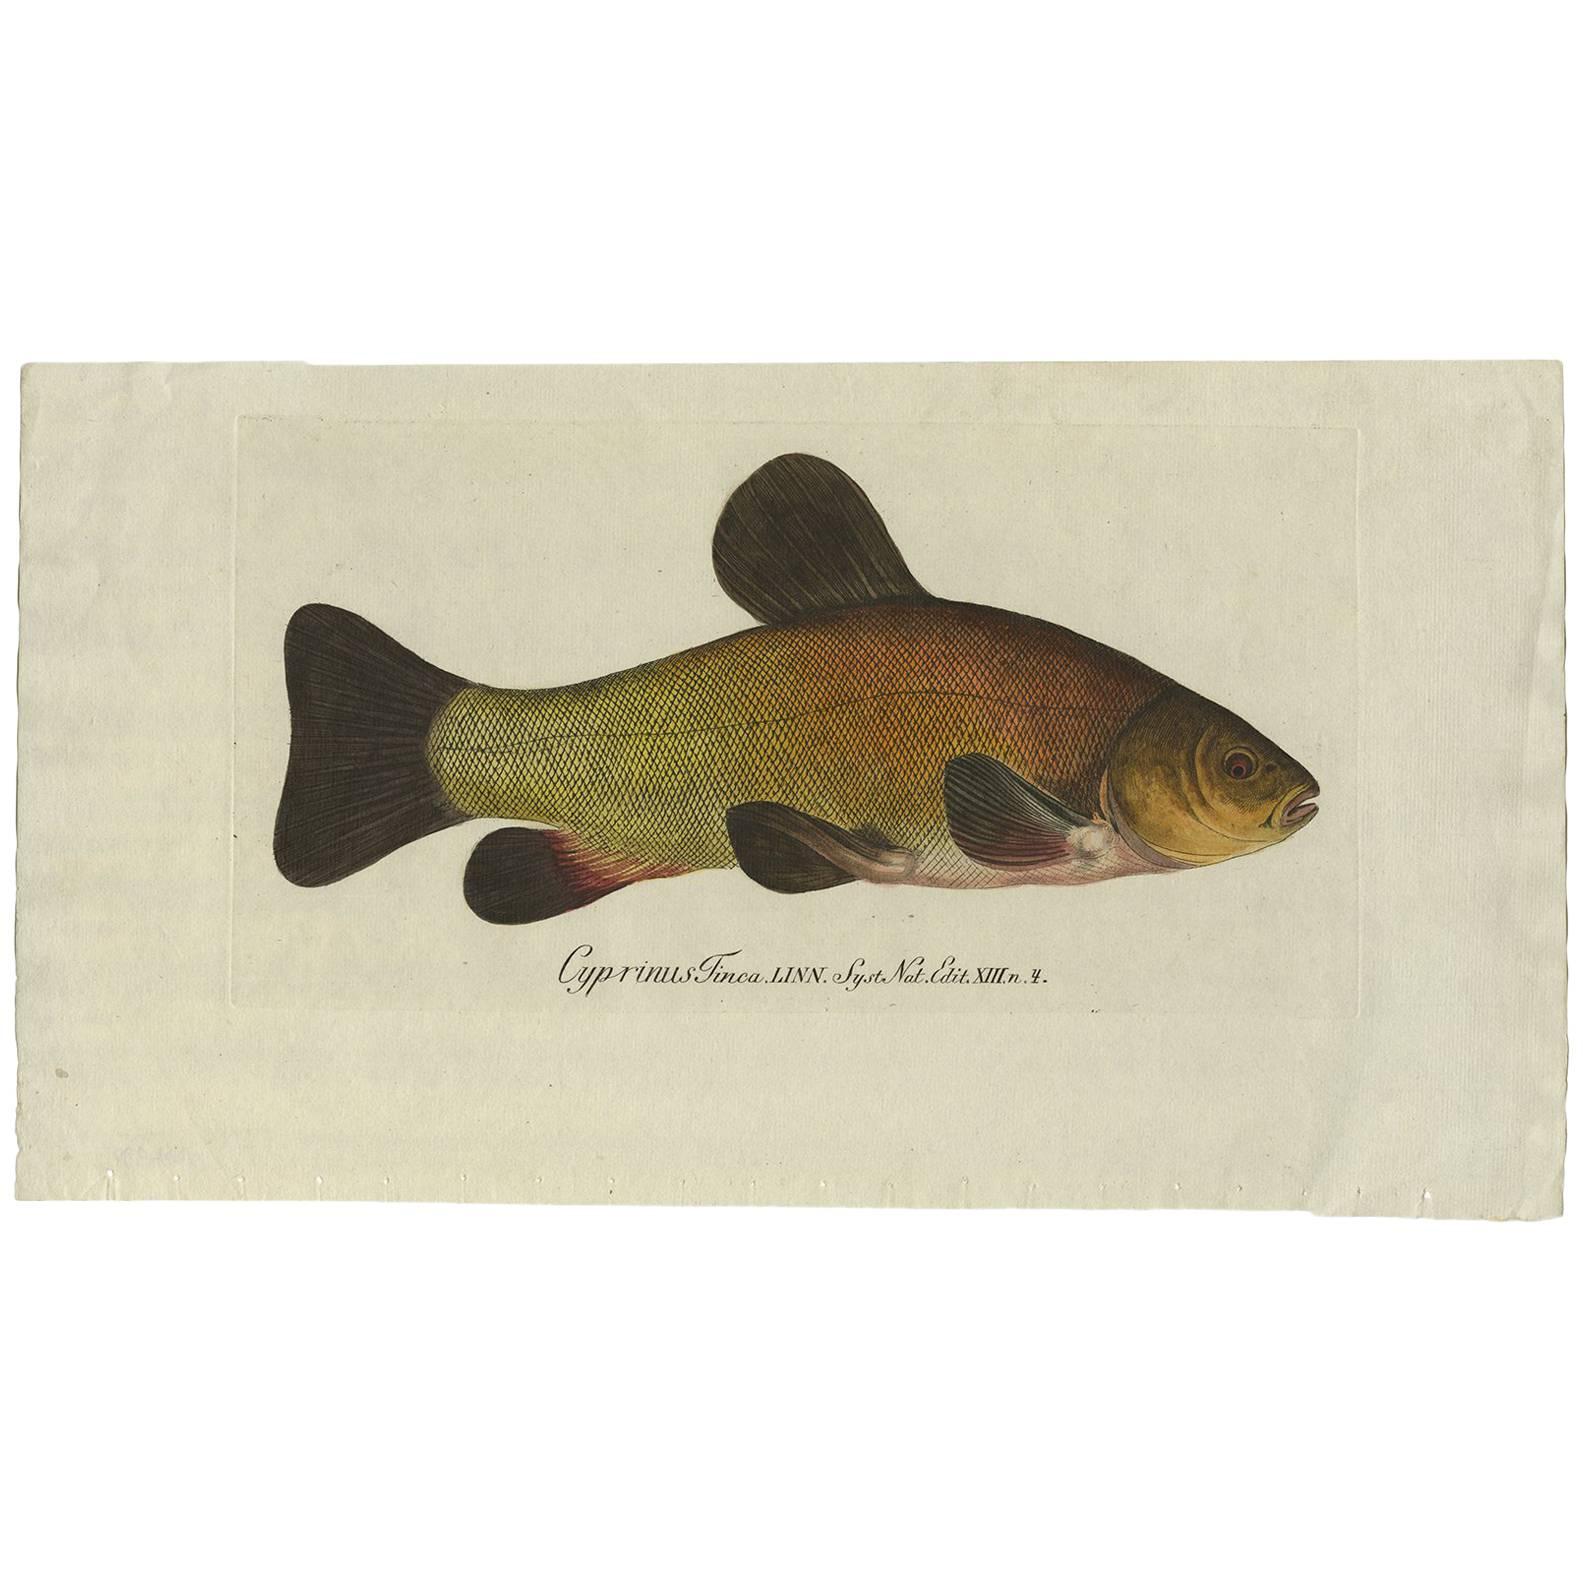 Ancien poisson imprimé « Circus Tinca » ou « Doctor Fish » (poisson de médecine),  1785